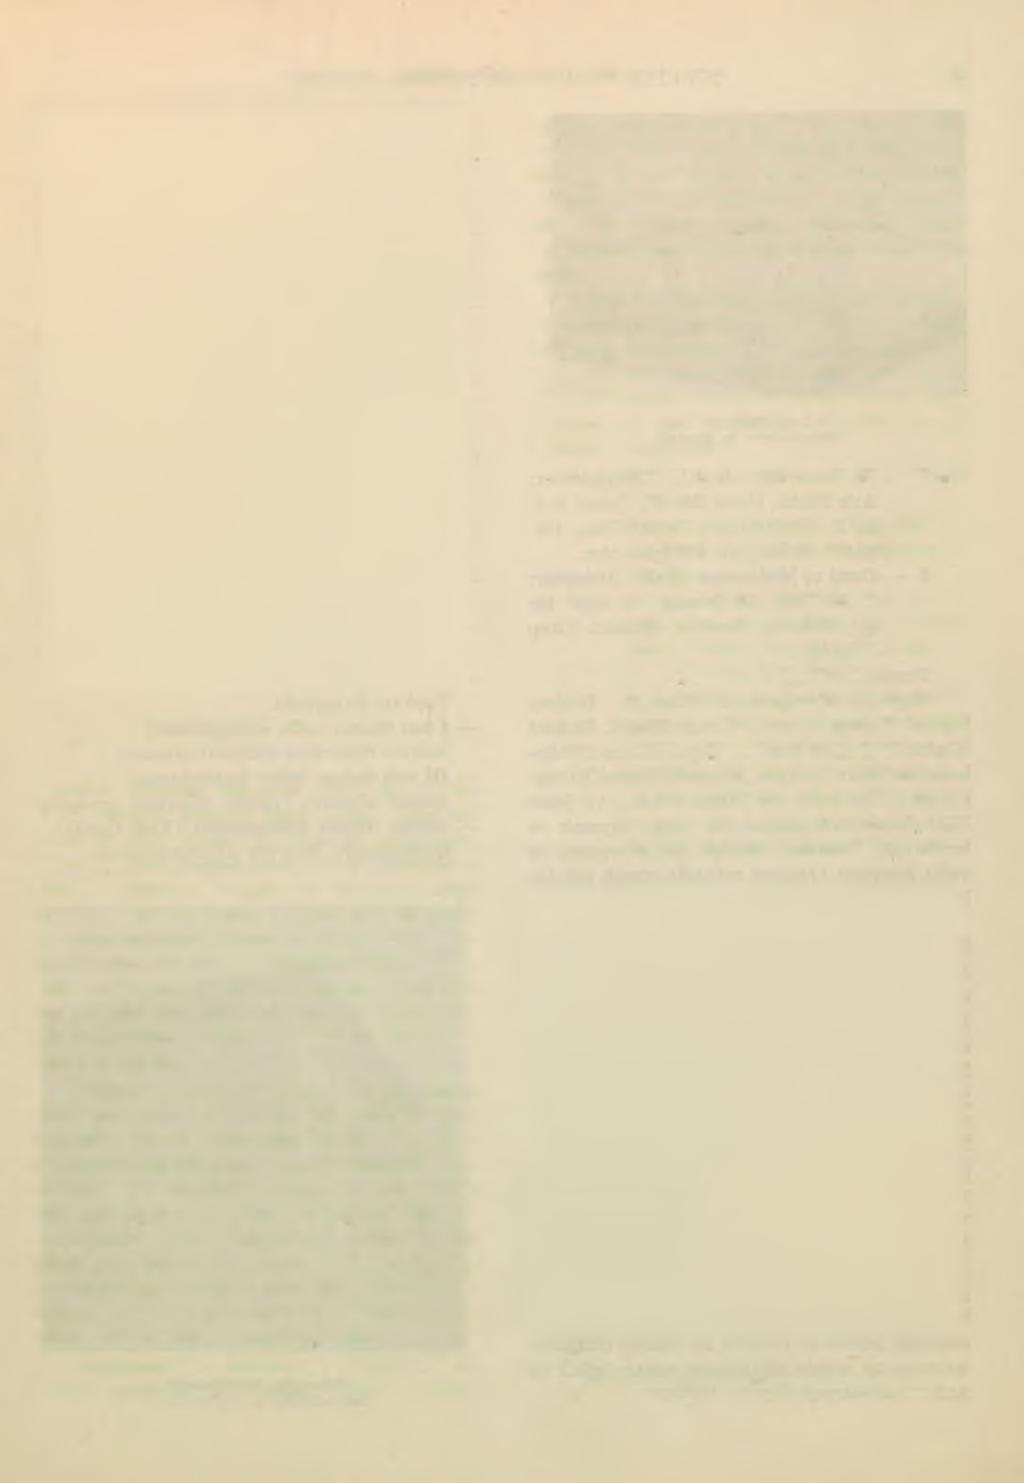 KASIM - ARALIK 1949 15 Ragrıp Paşa Kütüphanesinin içi Intérieur de la Bibliothèque de Raghip Pacha lerinden istifadeye müsaraat ettiği gibi, kendisi de kıyafeti İlmiyeyi libası fahiri saltanata